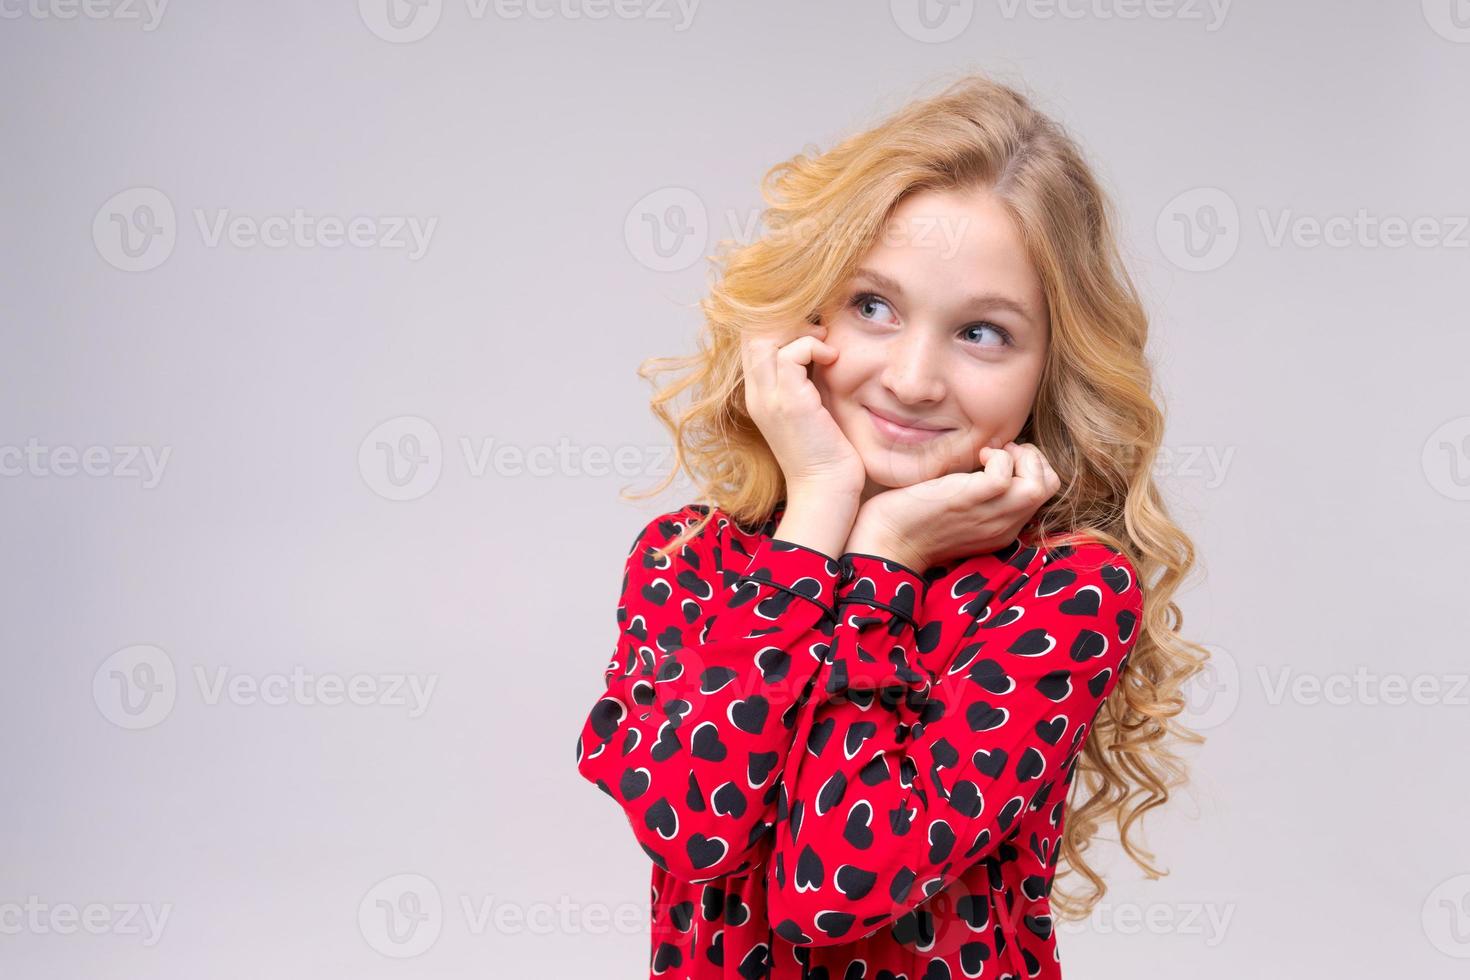 klein grappig kindmeisje van 8 jaar oud draagt een rode jurk met lang golvend haar foto